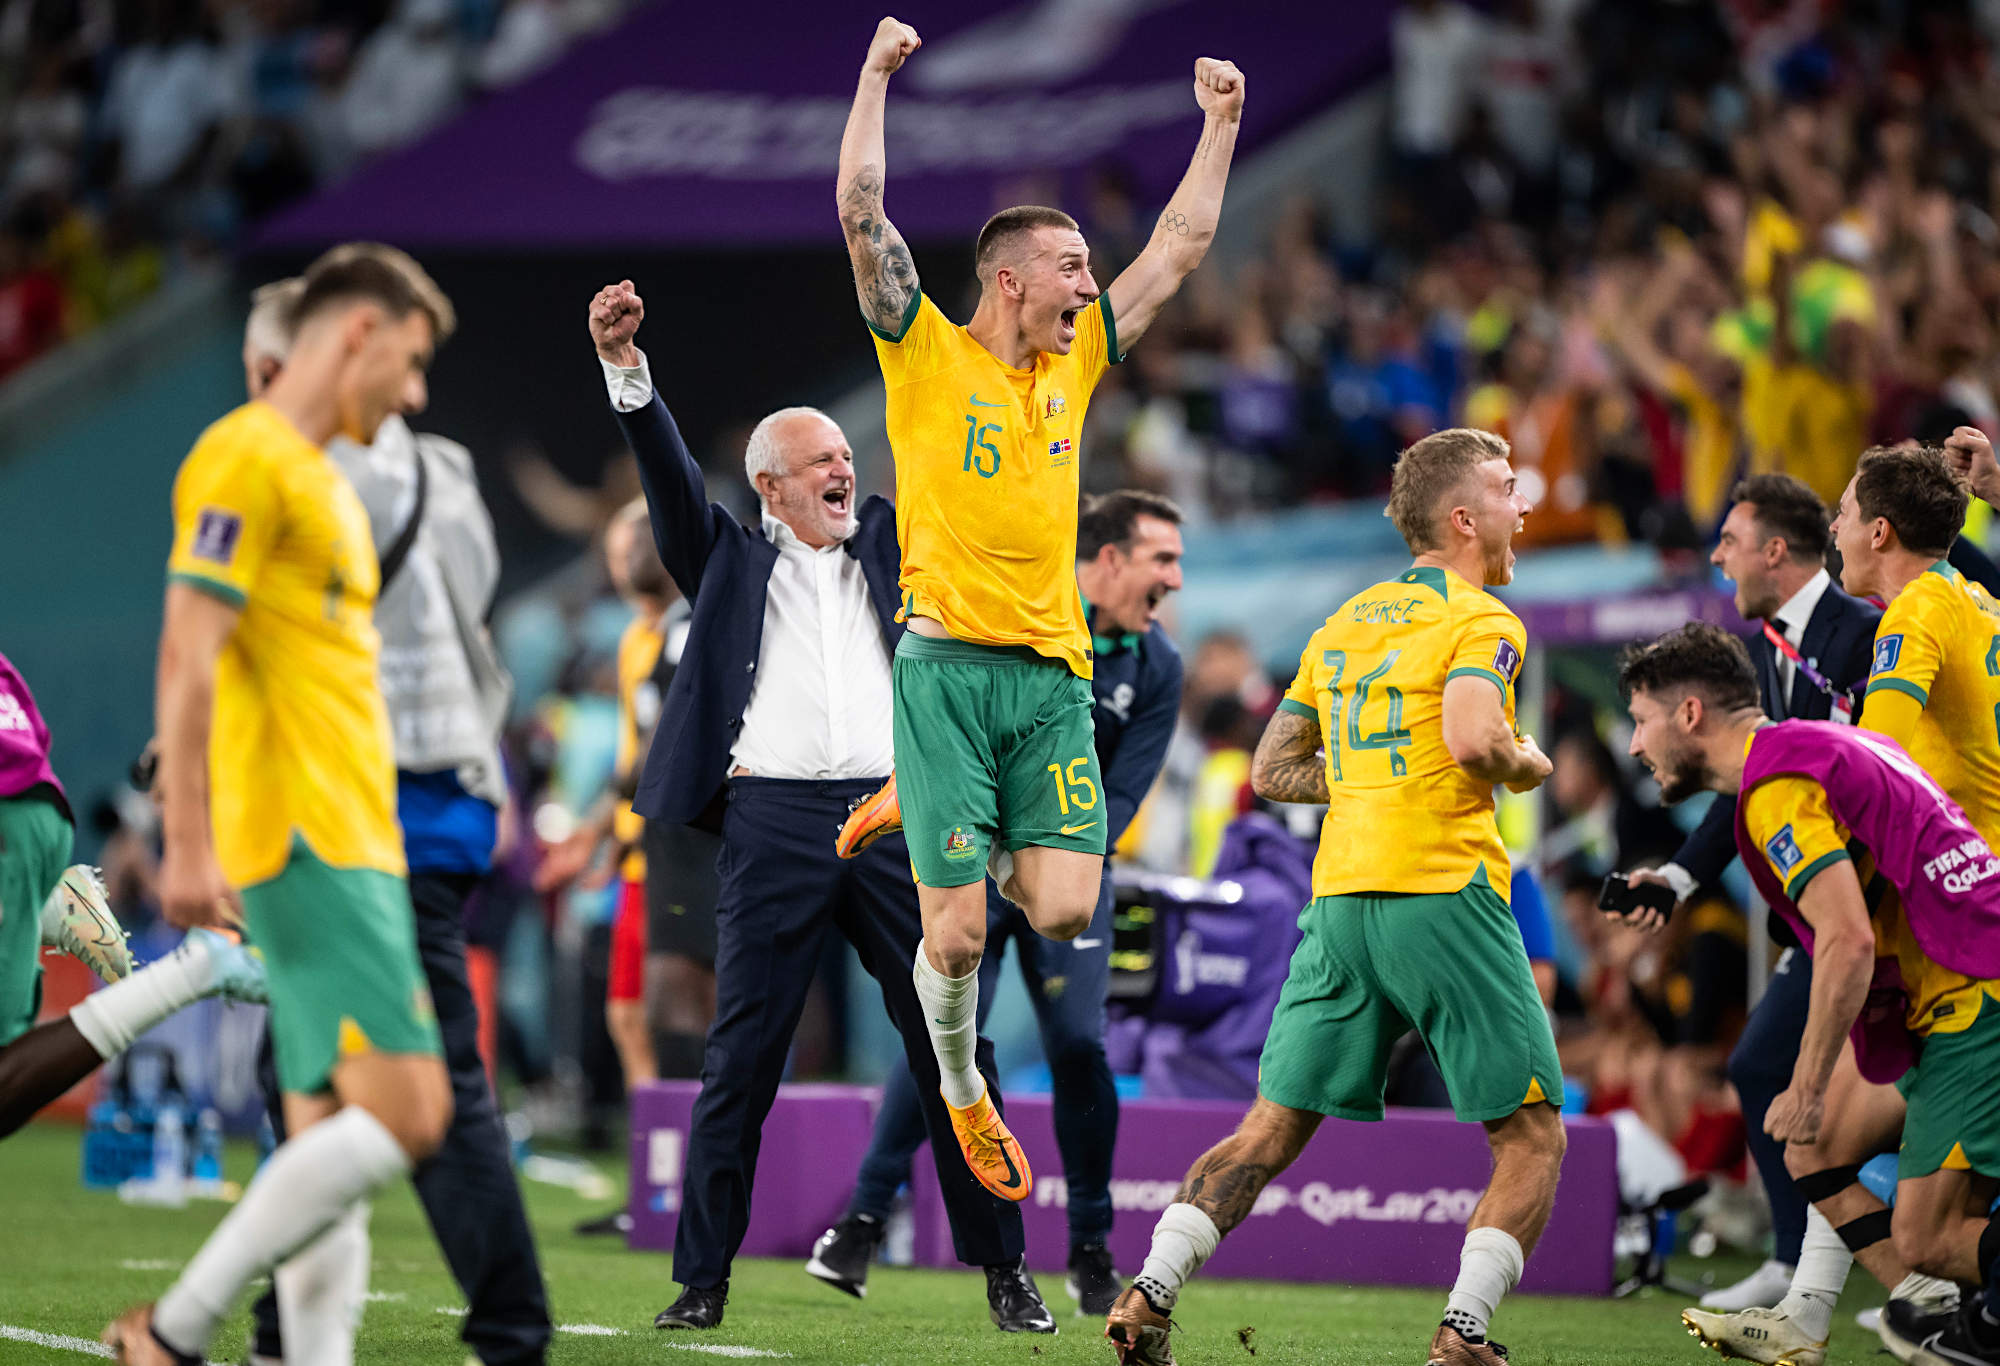 Arnie menetapkan kesepakatan kepelatihan baru Socceroos setelah memulai pembicaraan kontrak